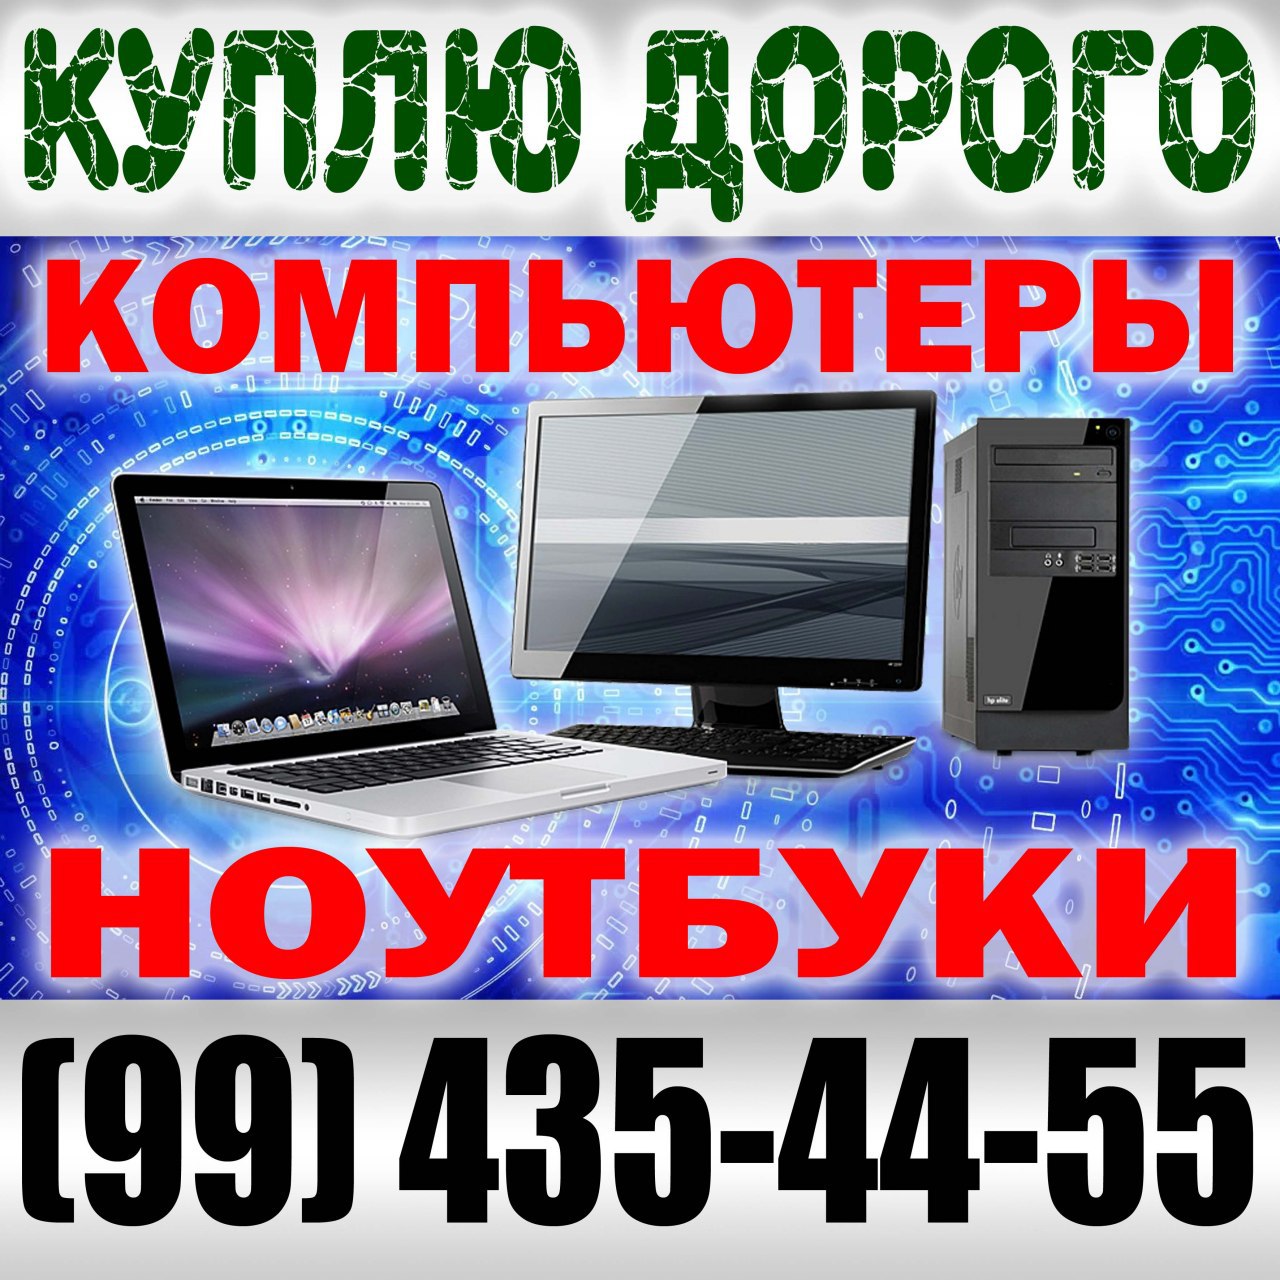 Компьютеры в ташкенте. Компьютеры в Ташкенте оптом. Цены компьютеров в Ташкенте. Ноутбук купить в Ташкенте.